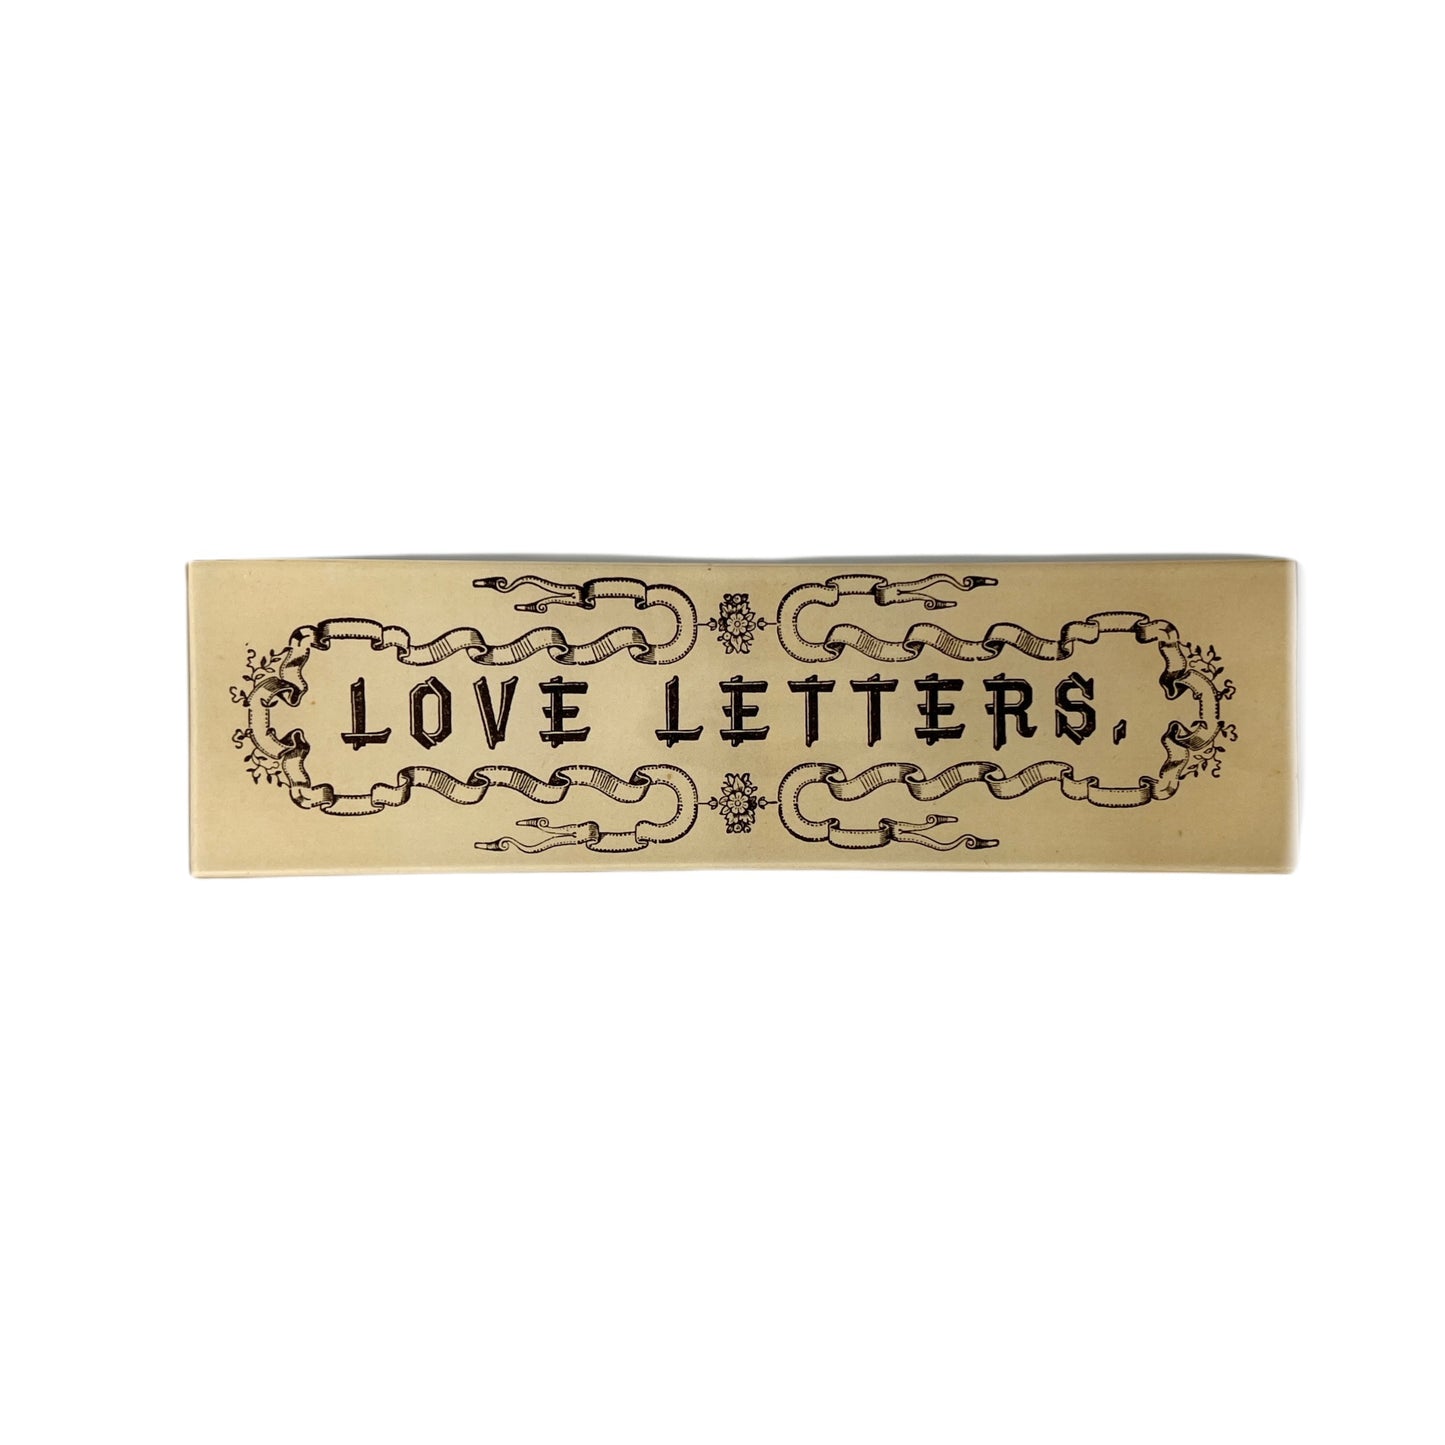 【JOHN DERIAN】デコパージュプレート Love Letters